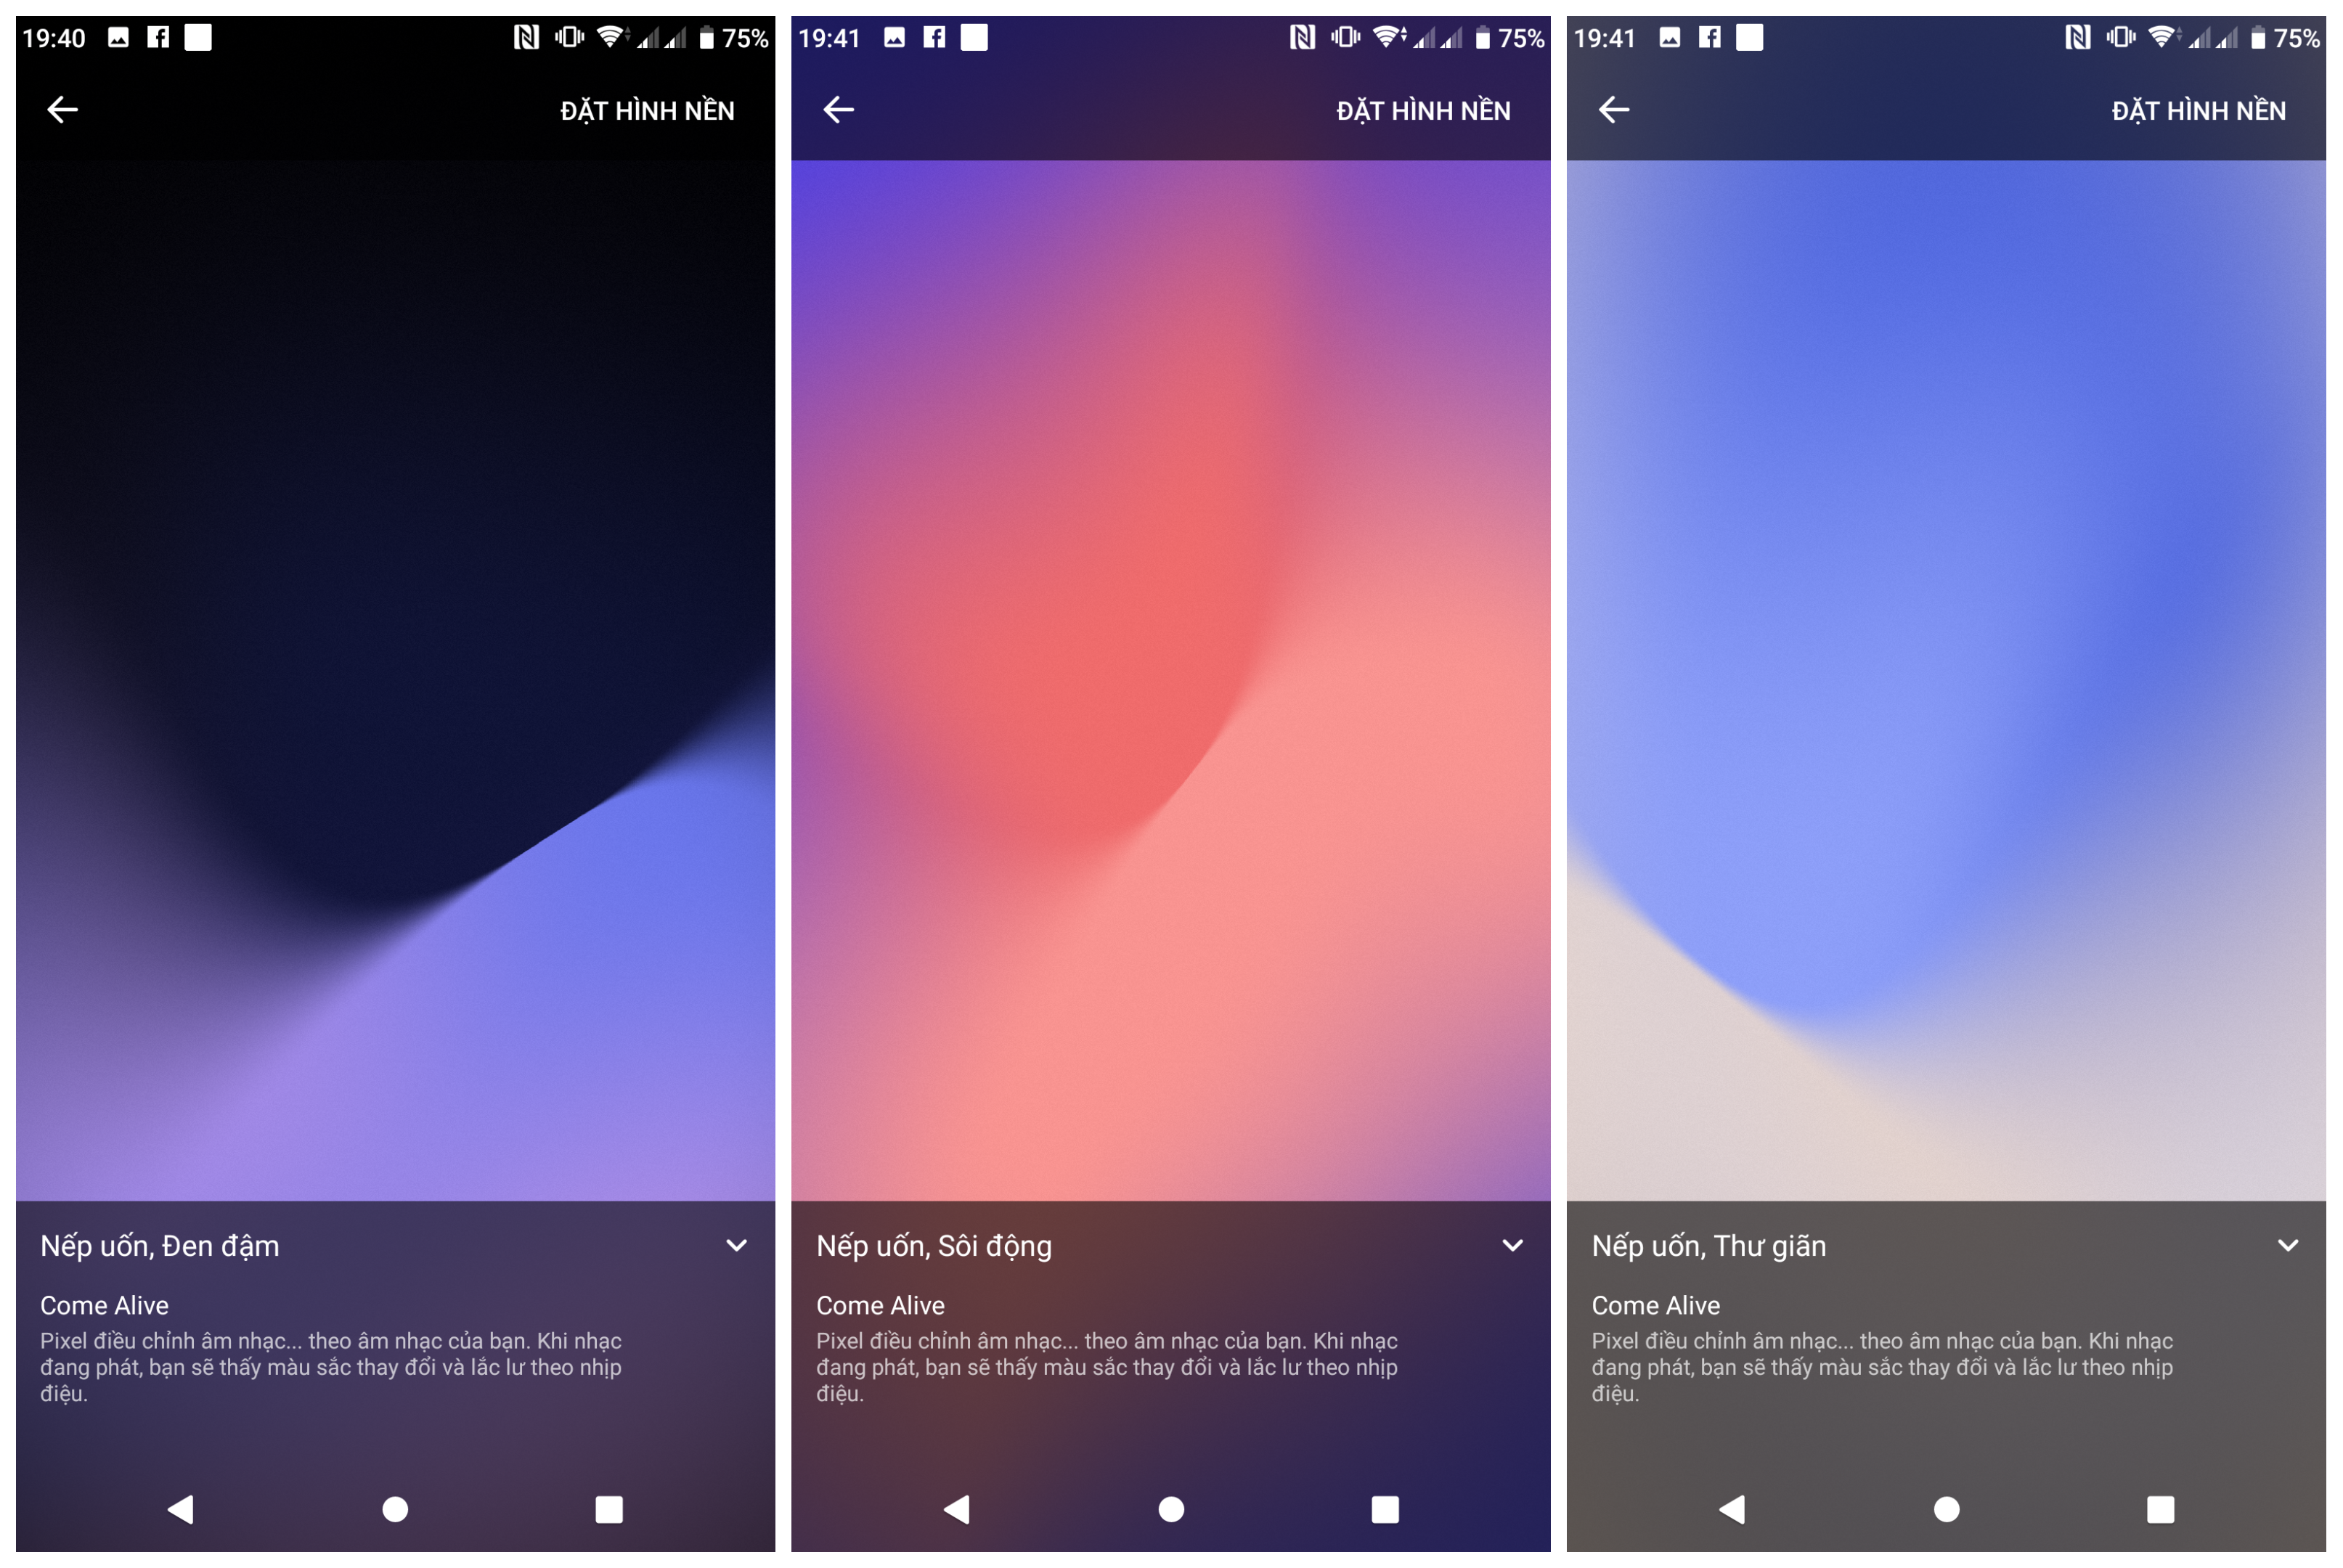 Tải về hình nền động của Google Pixel 3 cho các thiết bị Android